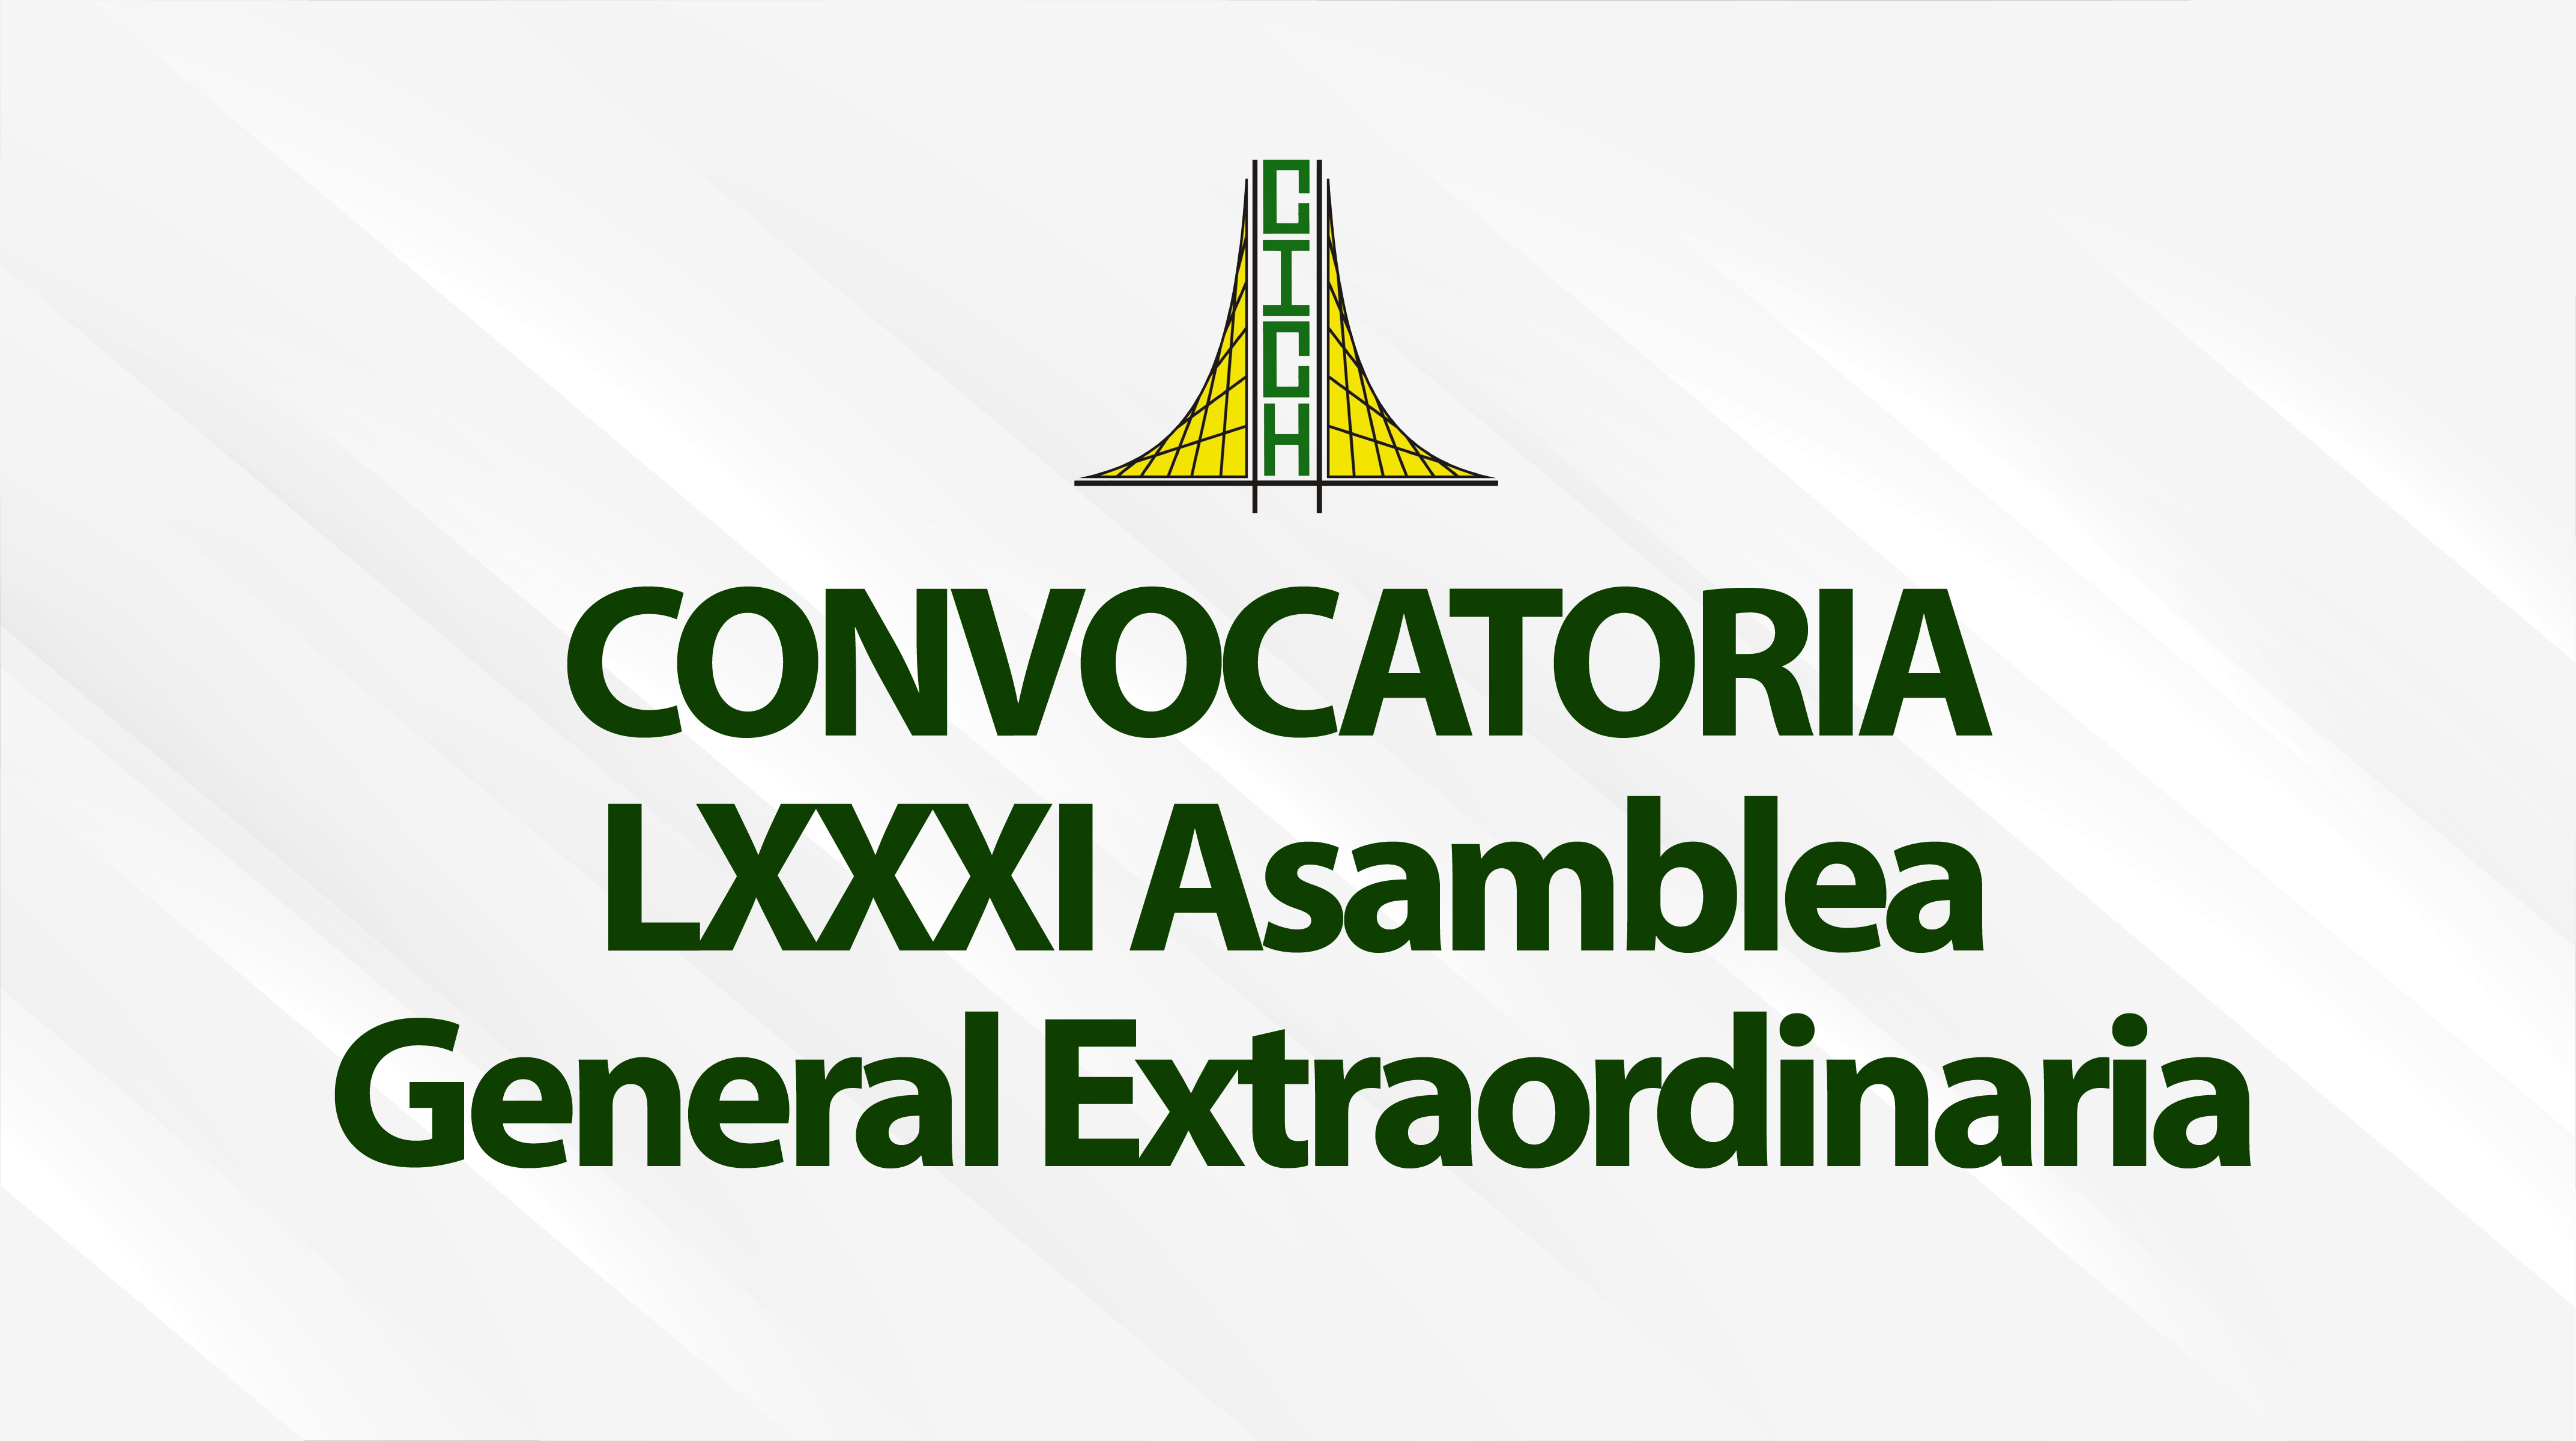 Convocatoria a LXXXI Asamblea General Extraordinaria